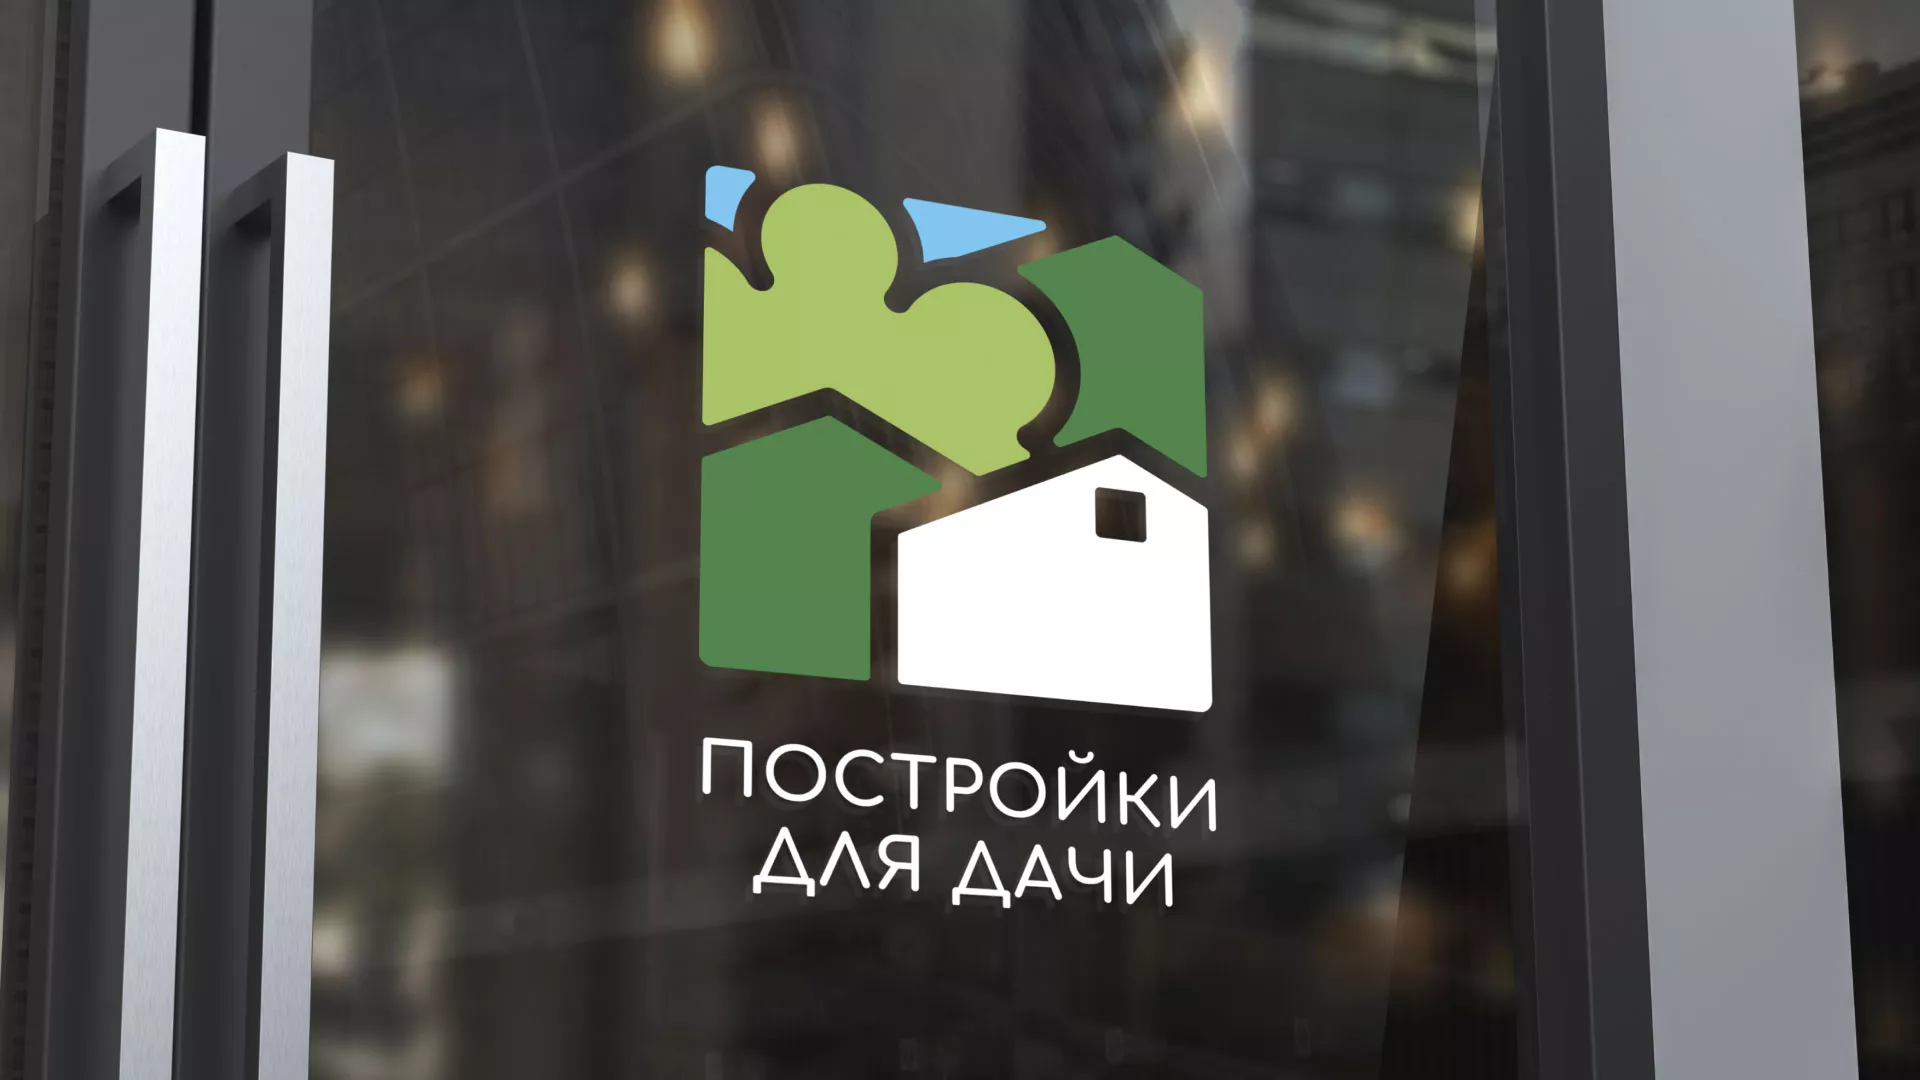 Разработка логотипа в Жуковке для компании «Постройки для дачи»